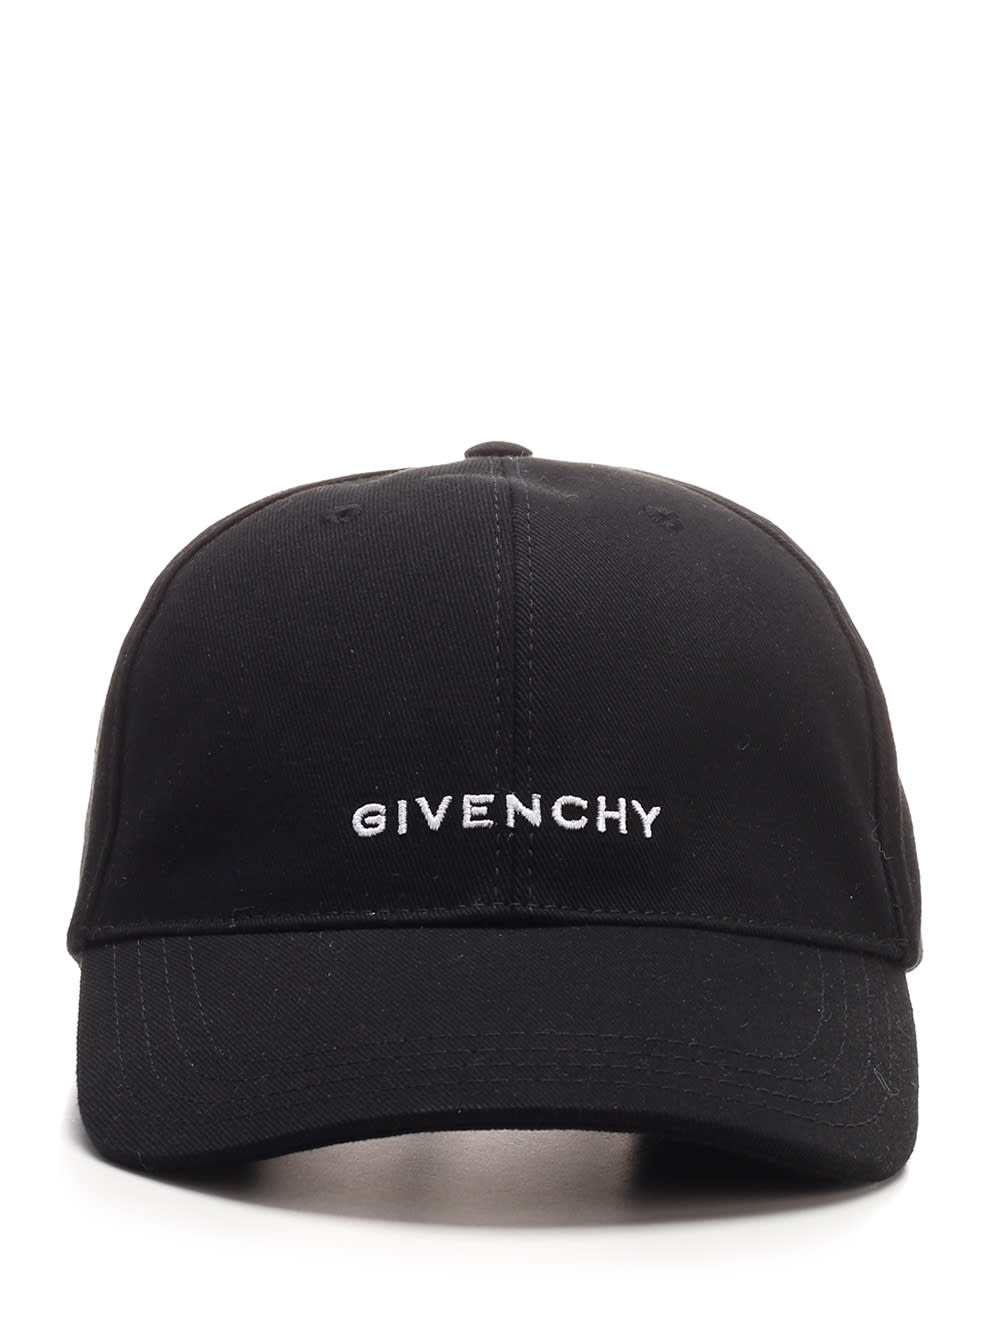 GIVENCHY BLACK 4G BASEBALL CAP